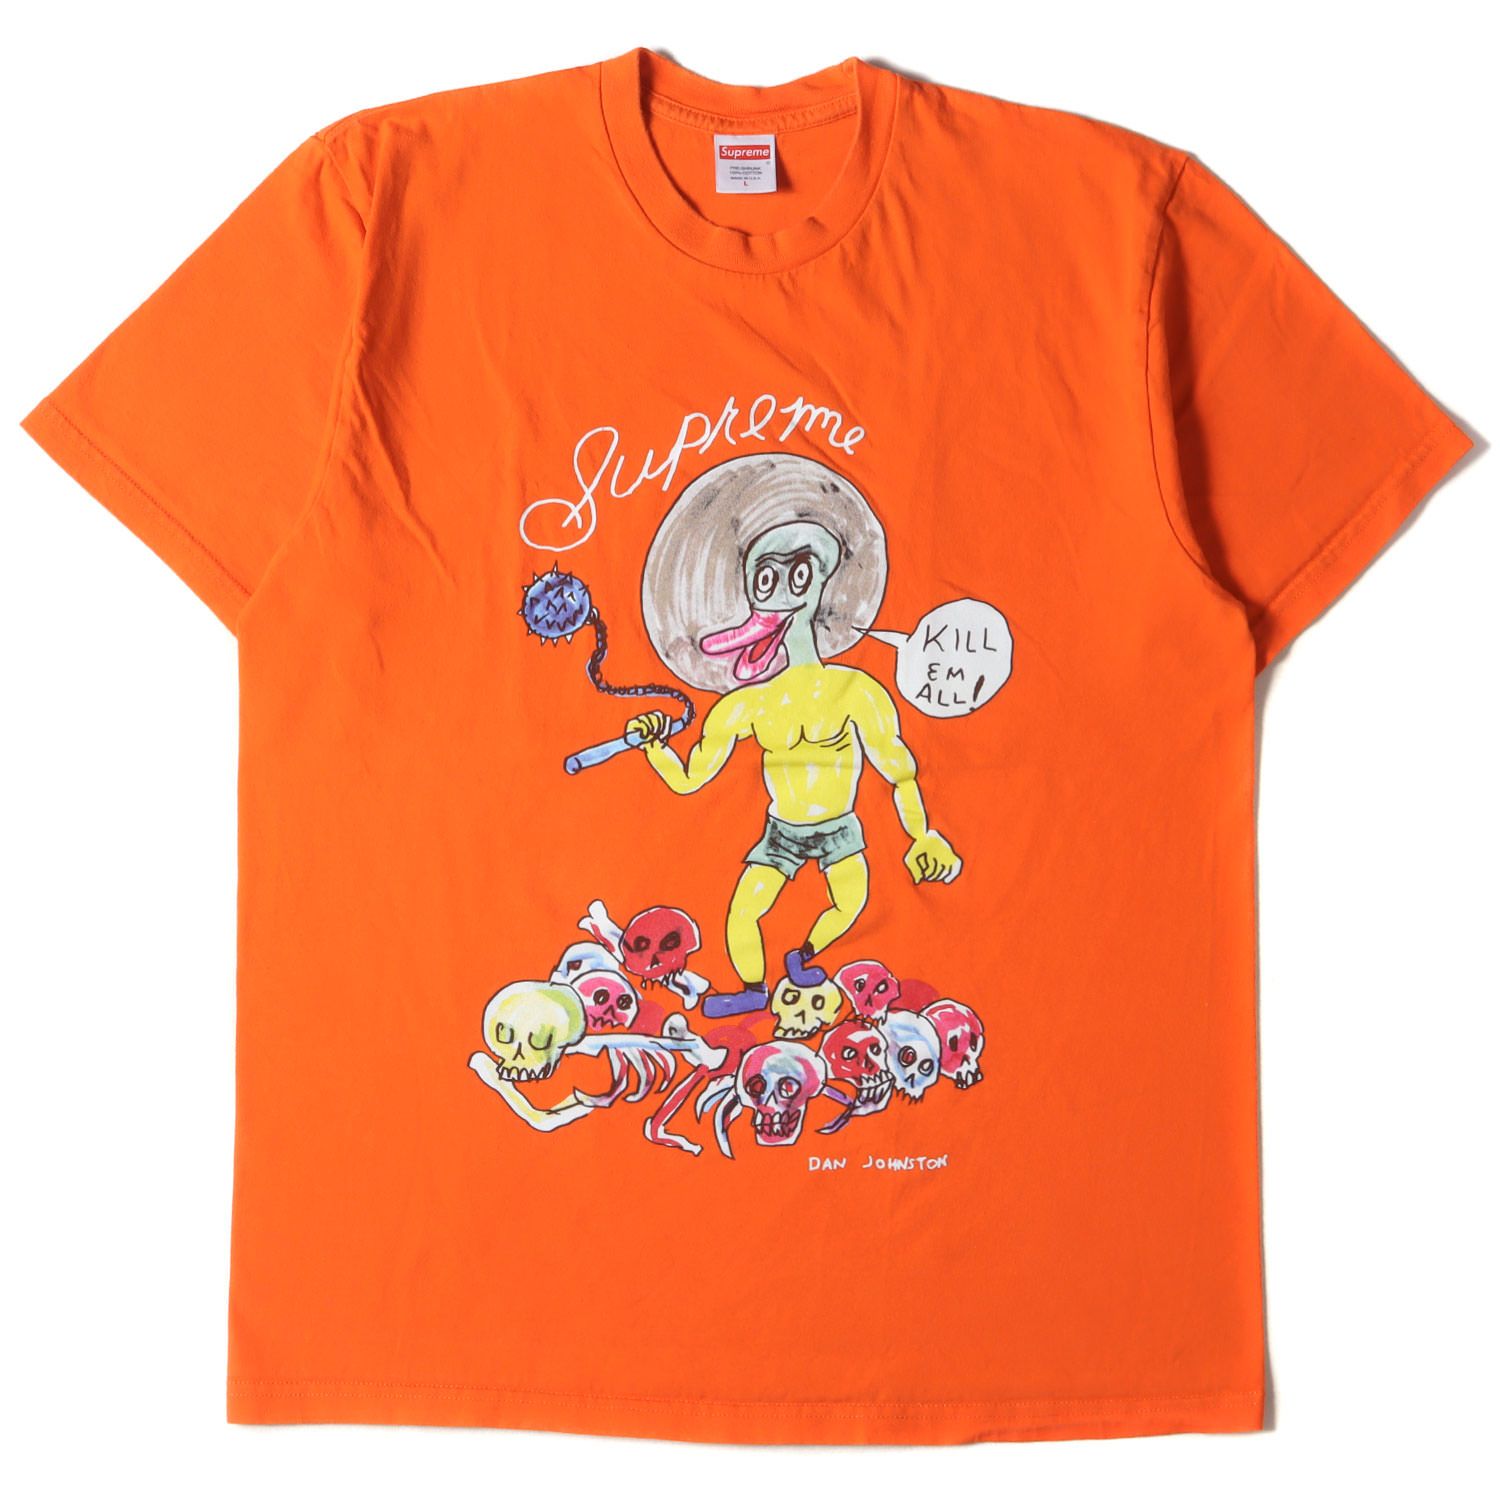 Supreme シュプリーム Tシャツ サイズ:L Daniel Johnston イラスト グラフィック クルーネック Kill Em All  Tee 20SS オレンジ トップス カットソー 半袖 ブランド